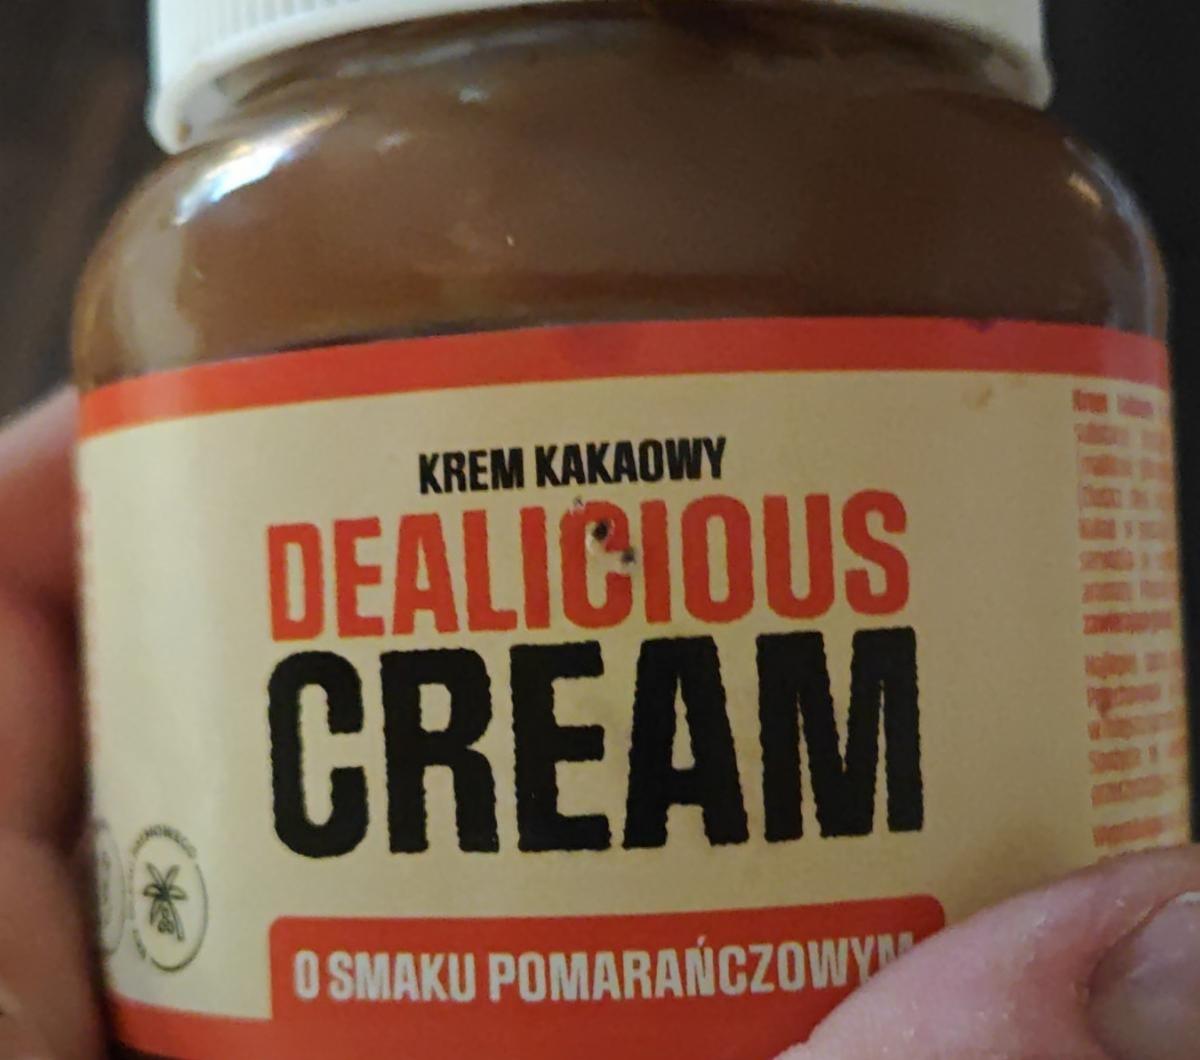 Zdjęcia - Dealicious Cream Krem kakaowy o smaku pomarańczowym